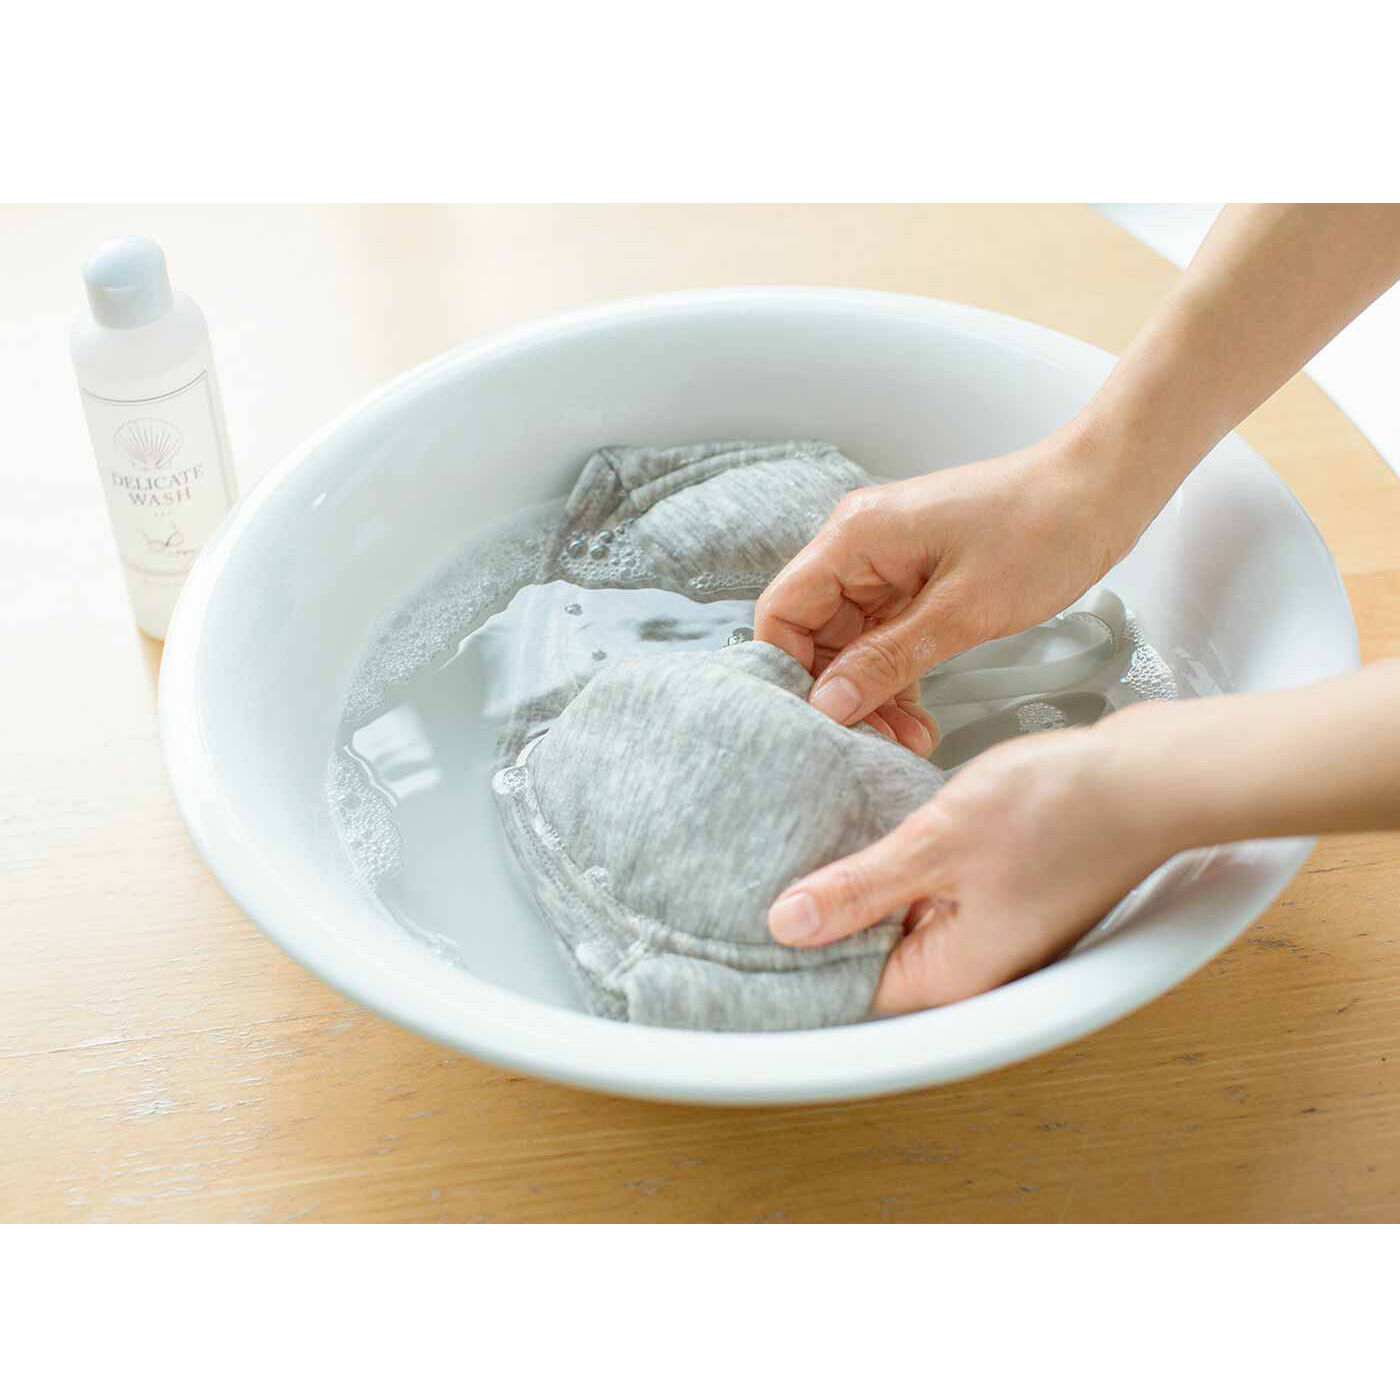 フラフィール|ホタテの貝殻生まれ つけ置き洗いですっきりきれい ランジェリー用洗剤の会|ブラジャーやショーツにも使用できます。